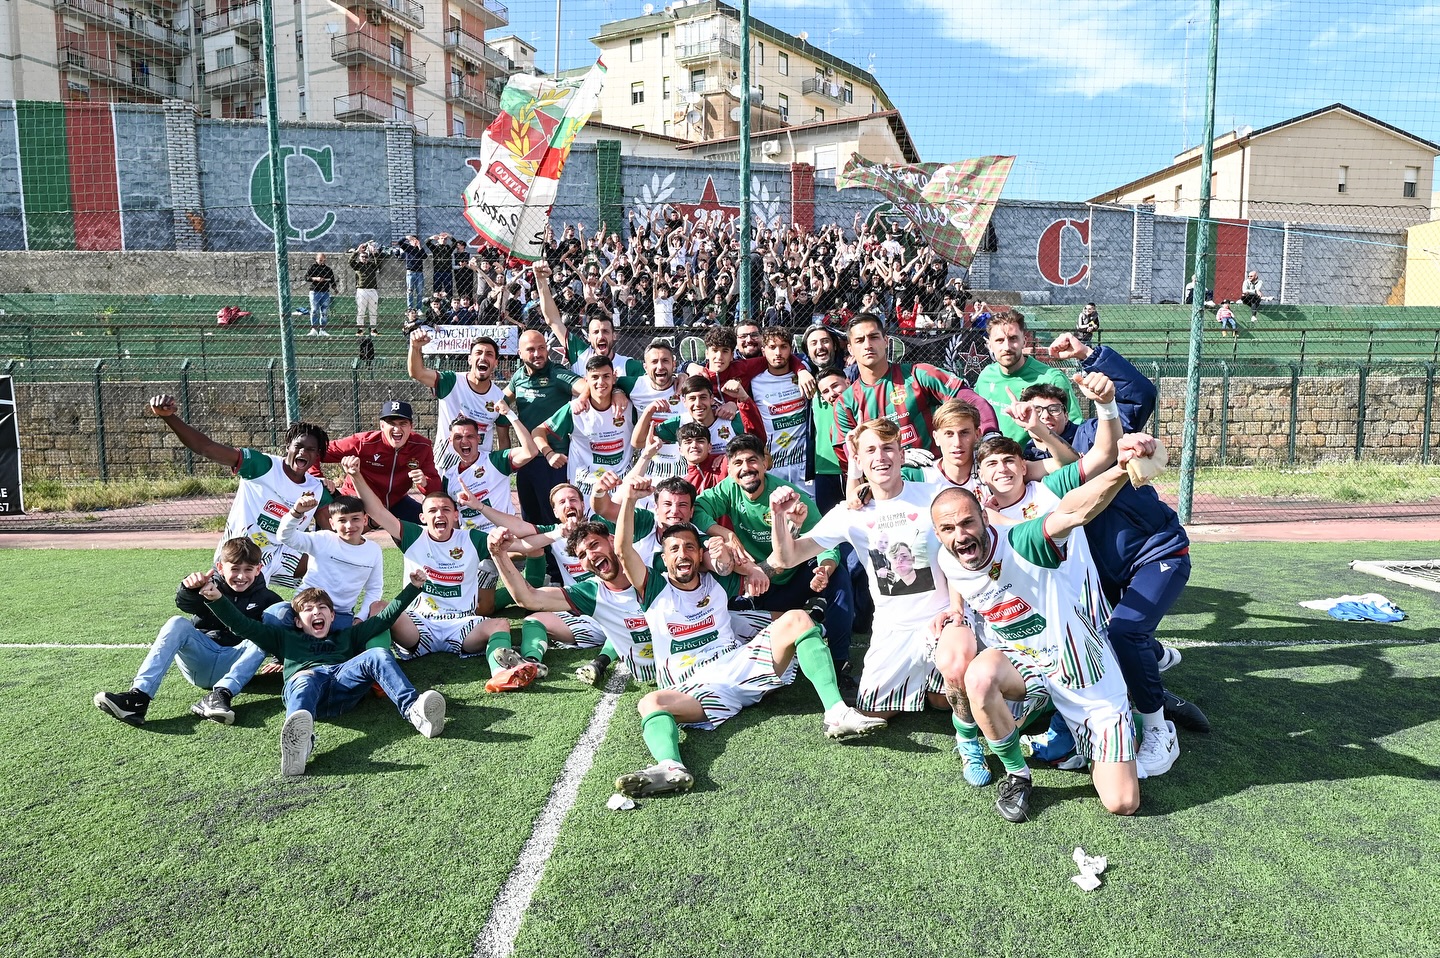 Serie D. La Sancataldese batte 2-0 l’Igea Virtus e conquista la salvezza. Decisivi i gol di Mazza e Siino